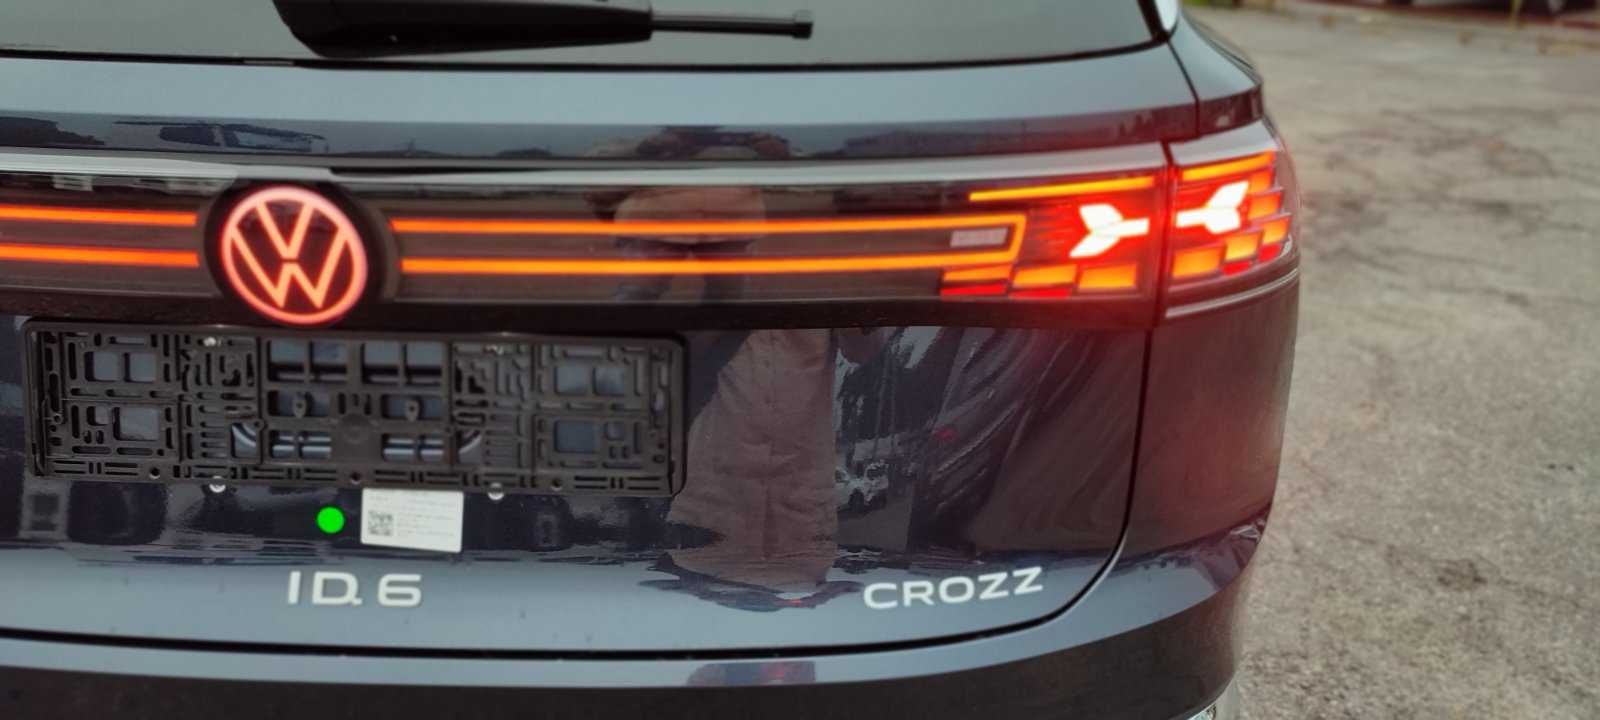 VW ID.6 CROZZ 7 місць , 85 квт на 600 км